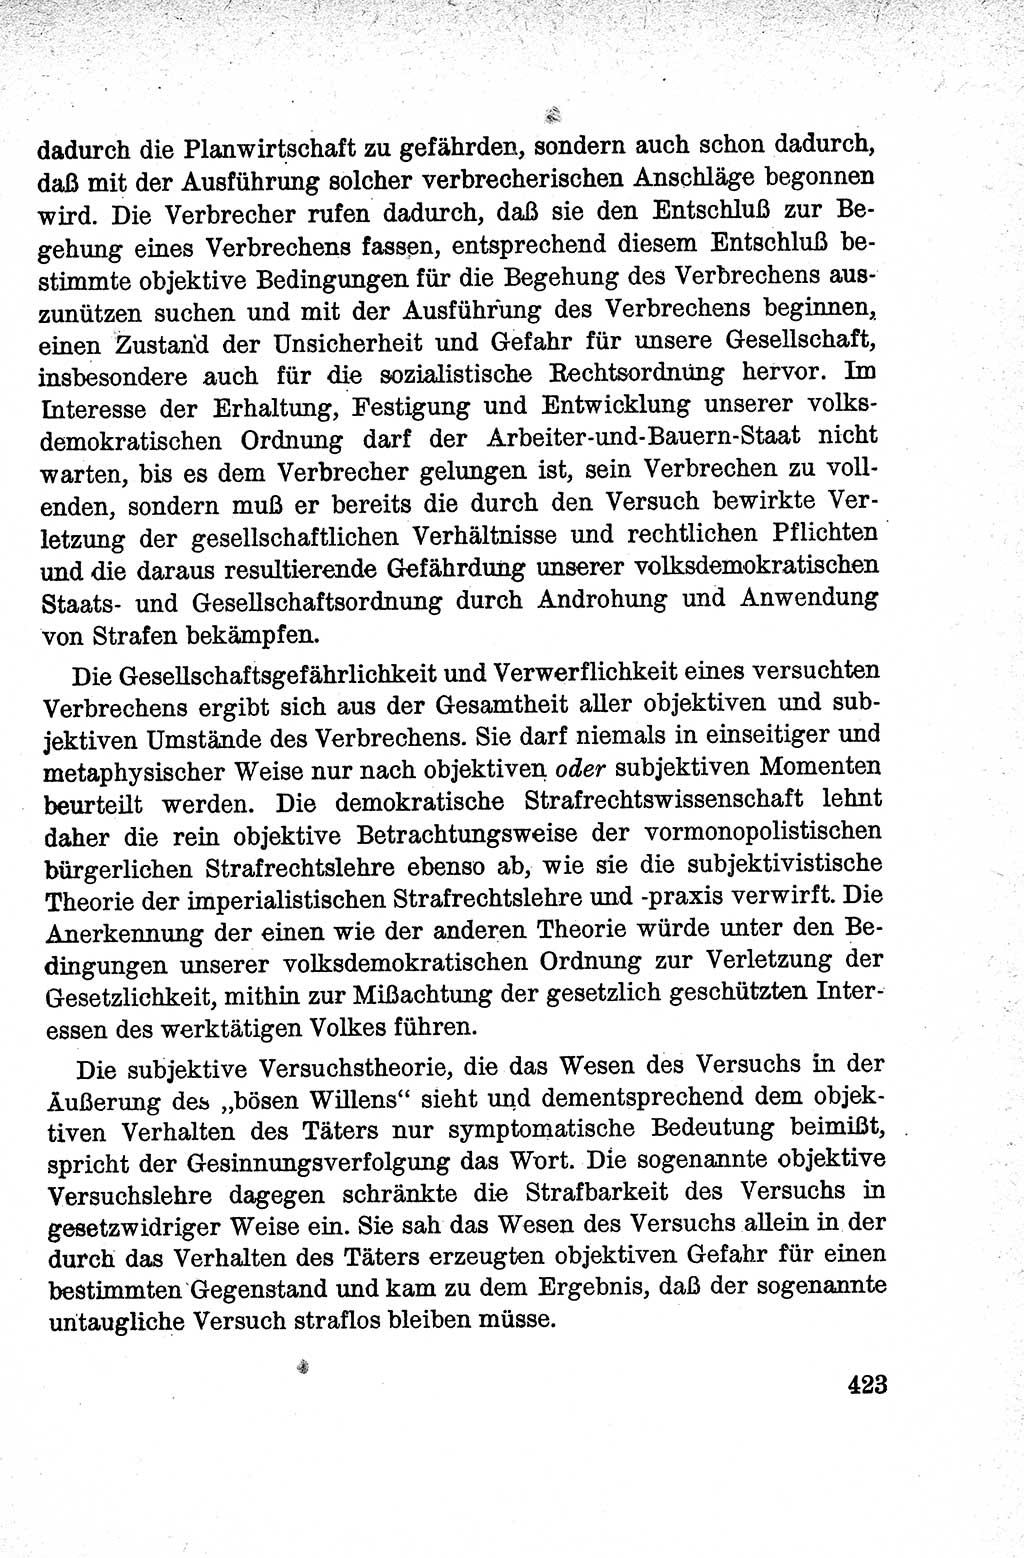 Lehrbuch des Strafrechts der Deutschen Demokratischen Republik (DDR), Allgemeiner Teil 1959, Seite 423 (Lb. Strafr. DDR AT 1959, S. 423)